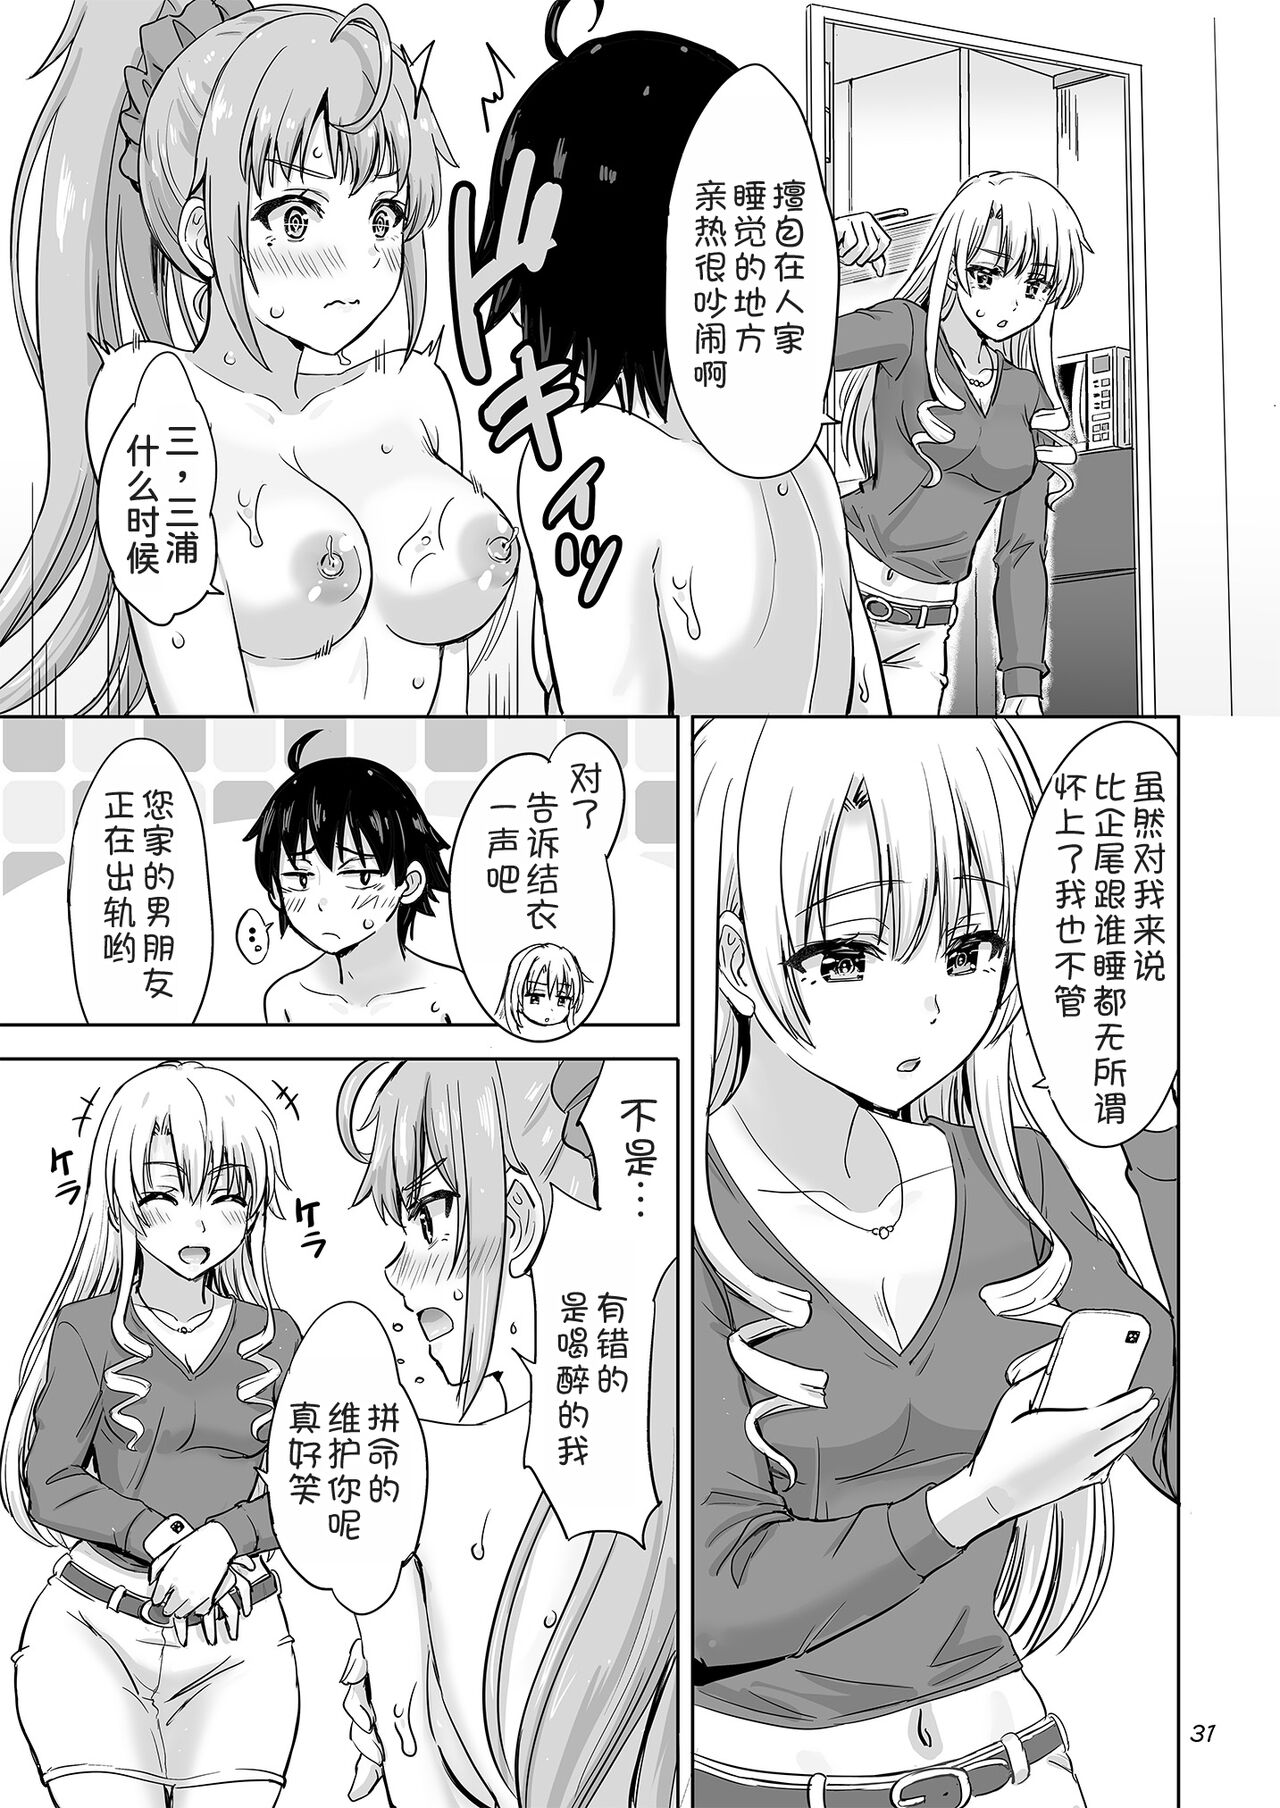 Dokyusei-tachi to no Sukoshi Ibitsu na Nikutai Kankei. - Yumiko miura & Saki kawasaki each have sex with Hachiman.